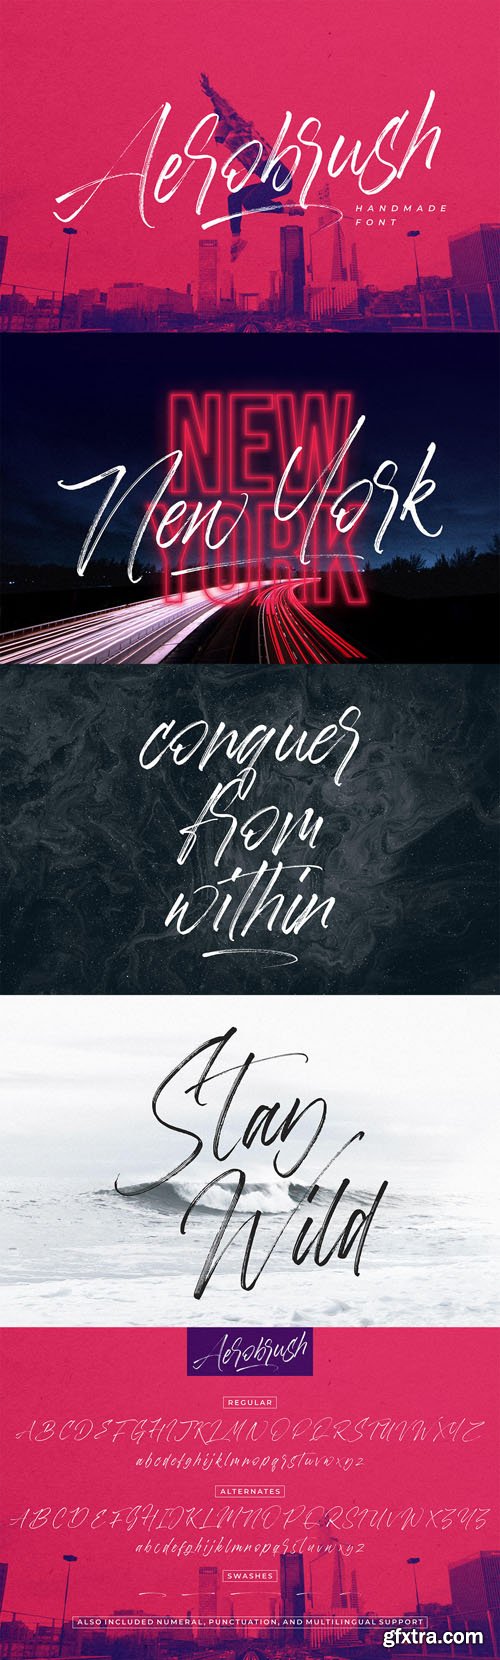 Aerobrush Handmade Font